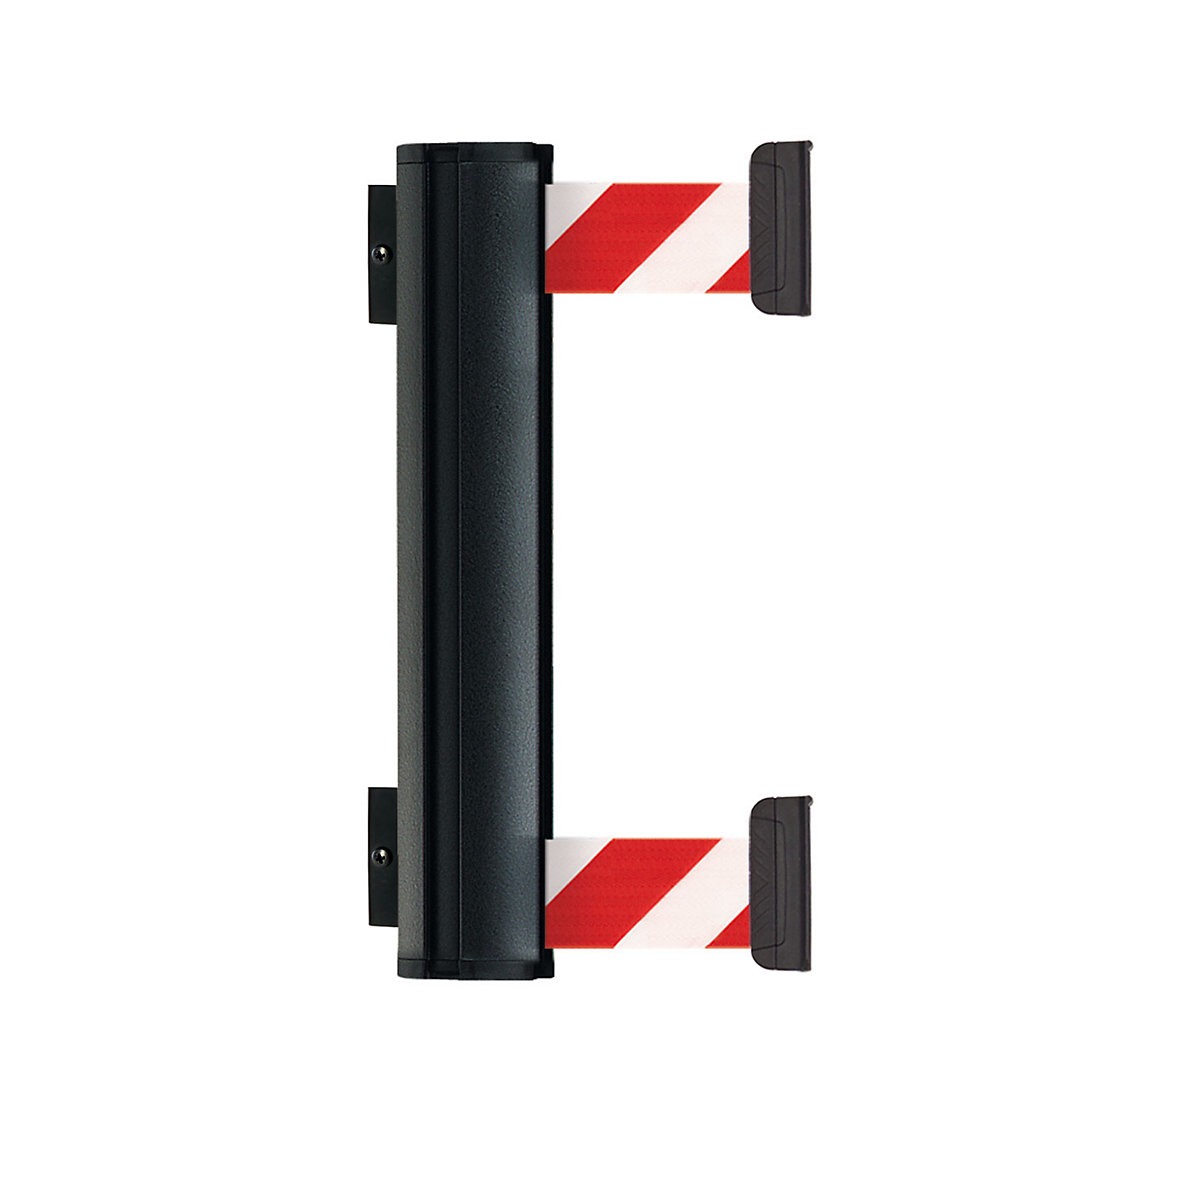 Hliníková kazeta s popruhem DOUBLE, vytažení popruhu max. 2300 mm, barva popruhu červená / bílá